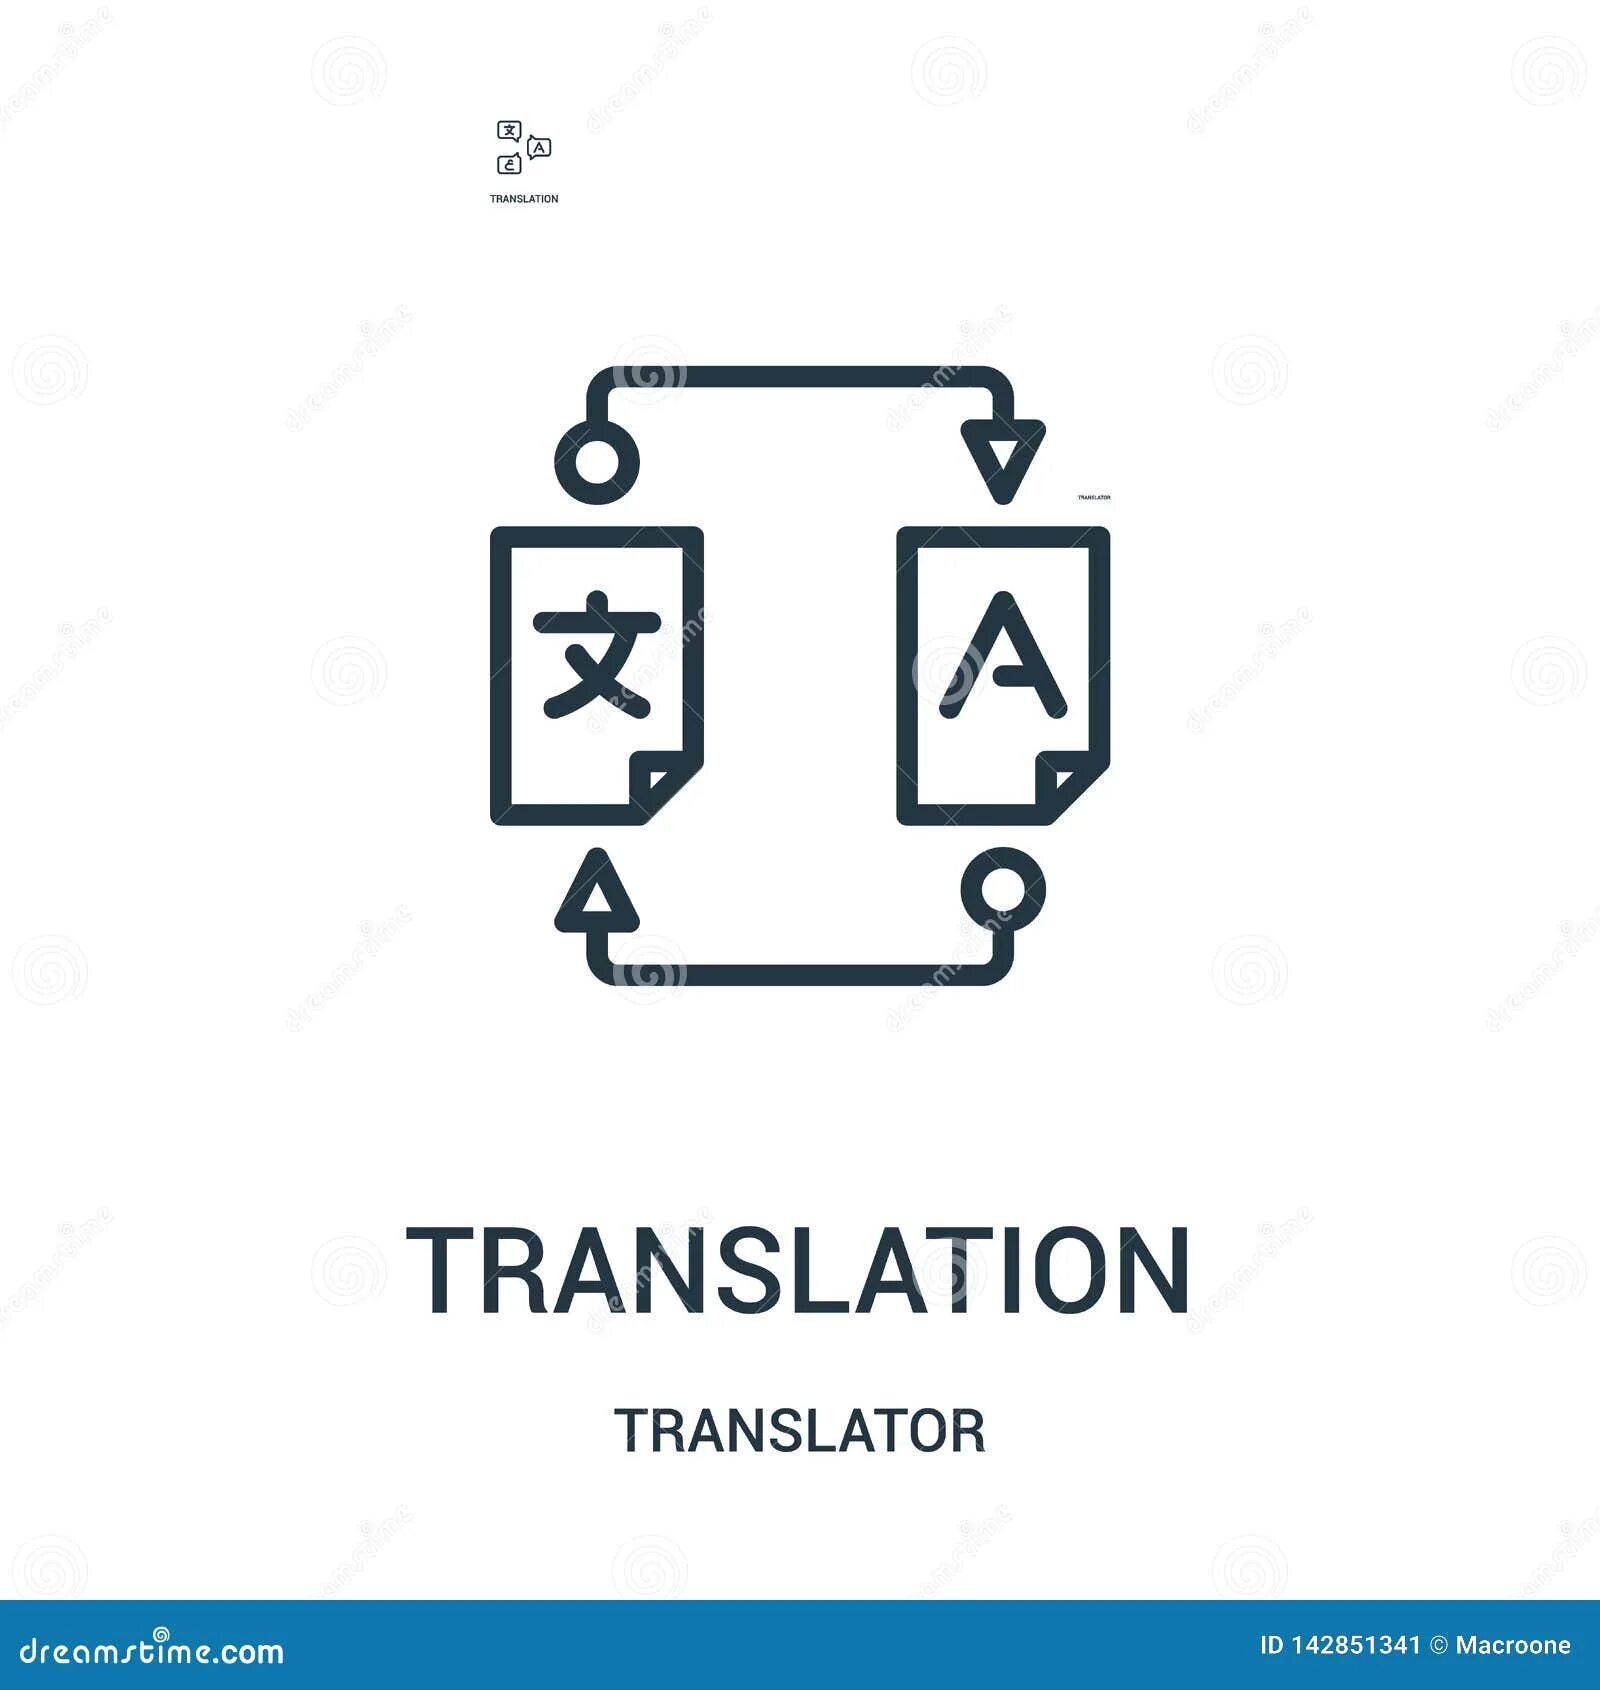 Icon перевод с английского. Пиктограмма перевод. Переводчик символов. Окна горизонтальные вектор для транслятор. Vector перевод.